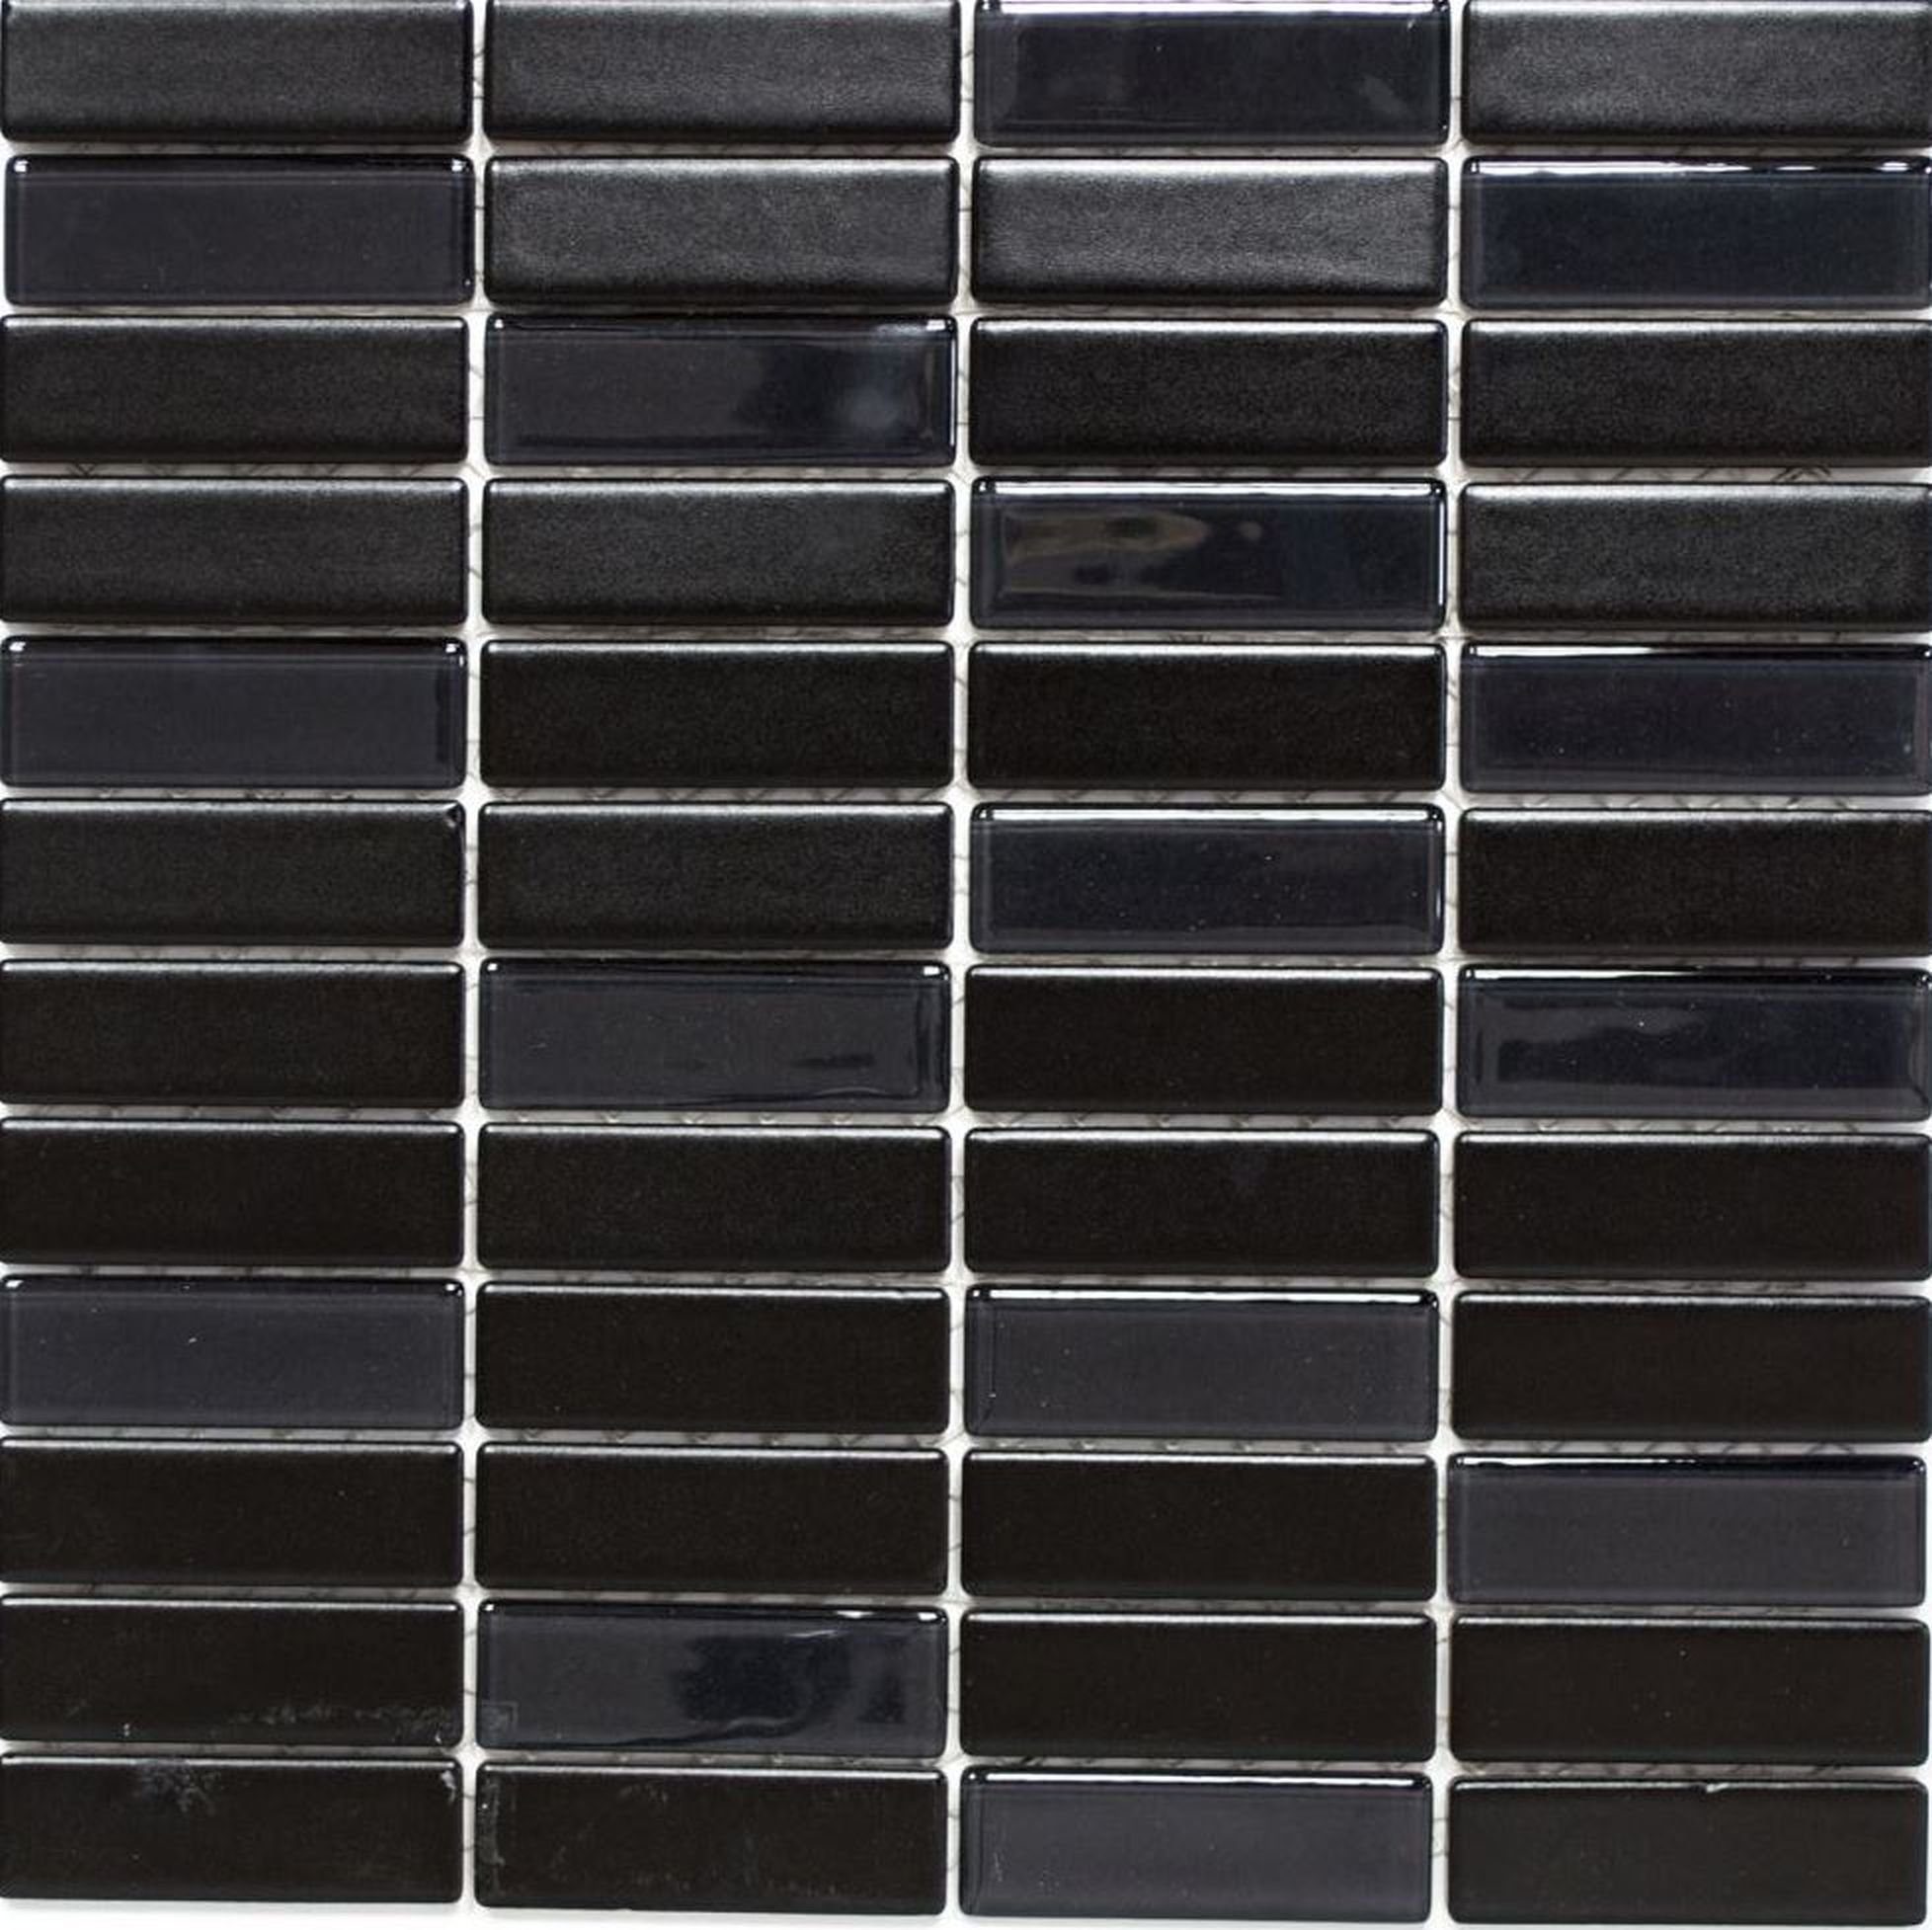 Mosani Mosaikfliesen Keramikmosaik mit Glasmosaik Mosaikfliese schwarz glänzend / 10 Matten | Fliesen